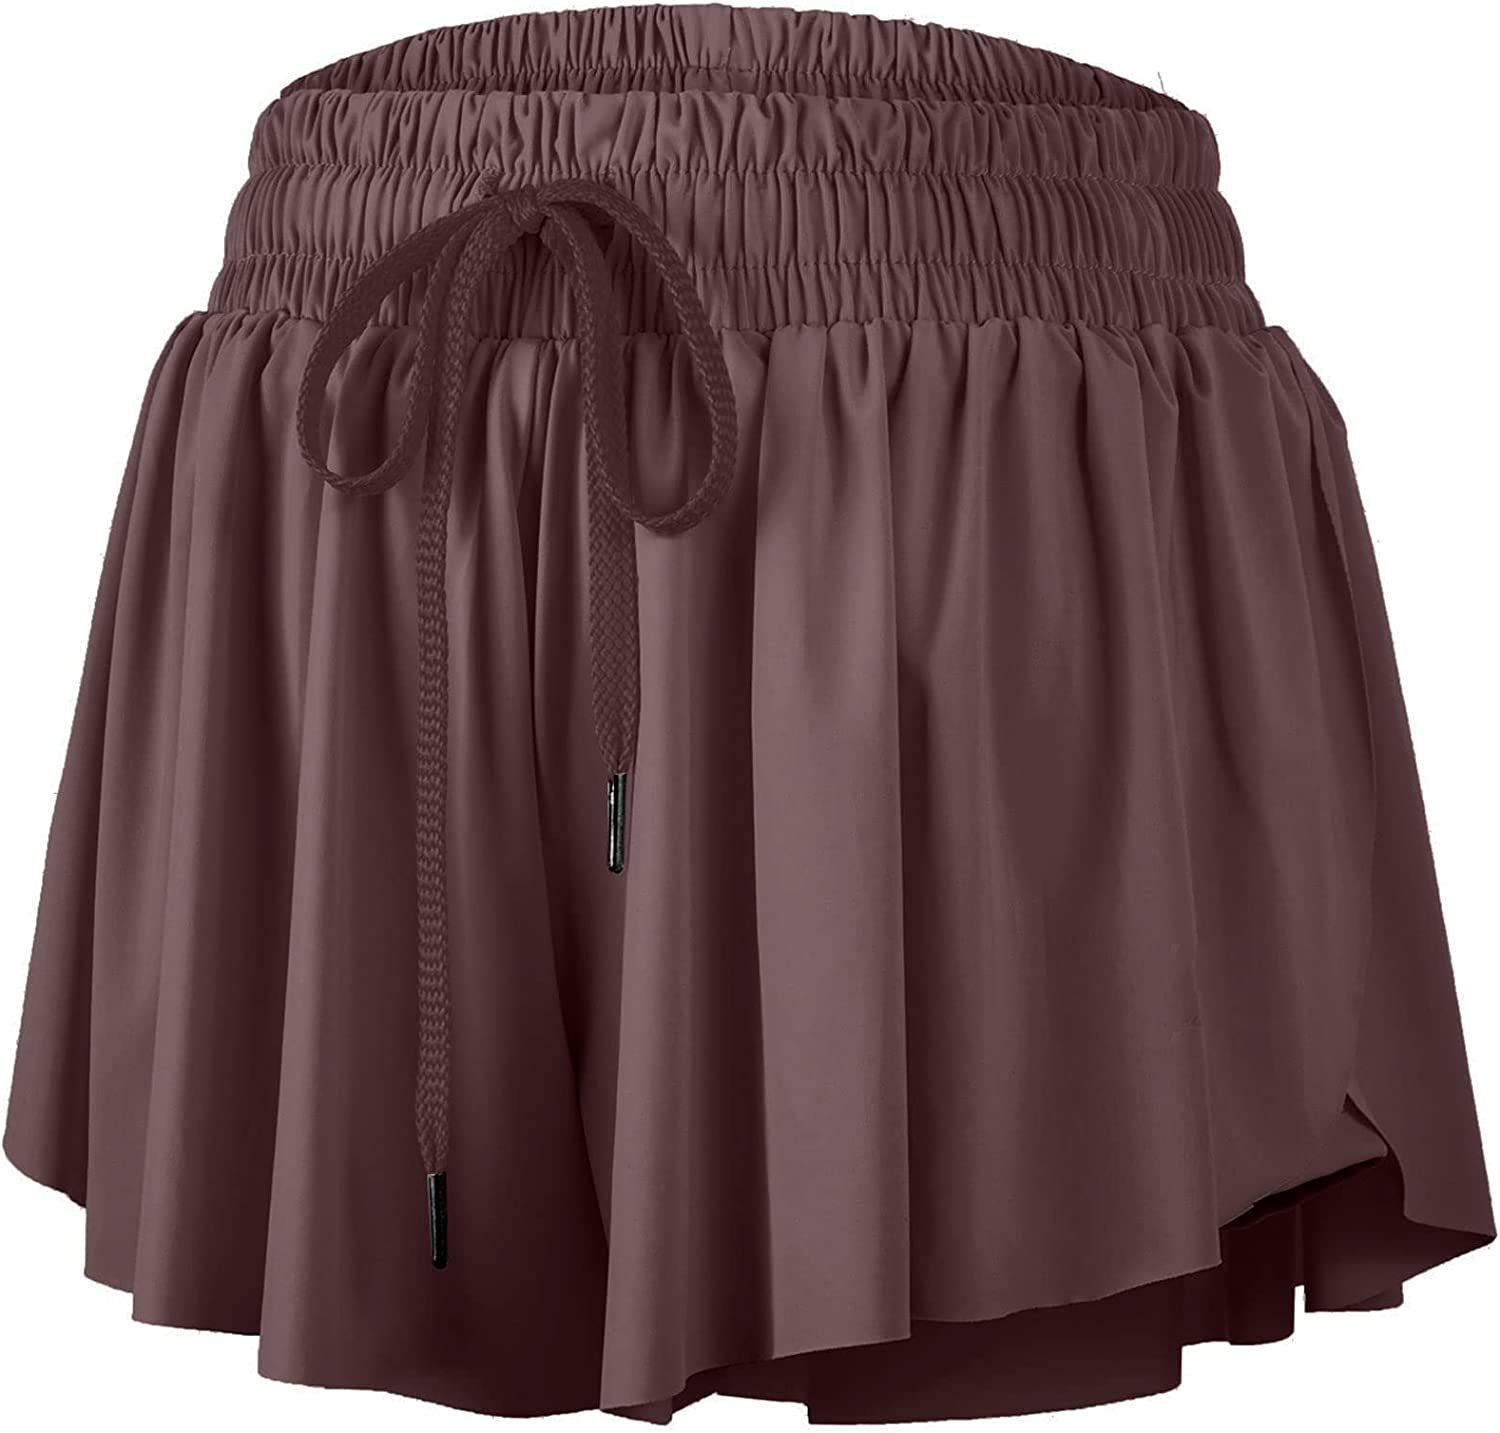 Blaosn Flowy Pleated Skirt Shorts for Women Gym Yoga Athletic